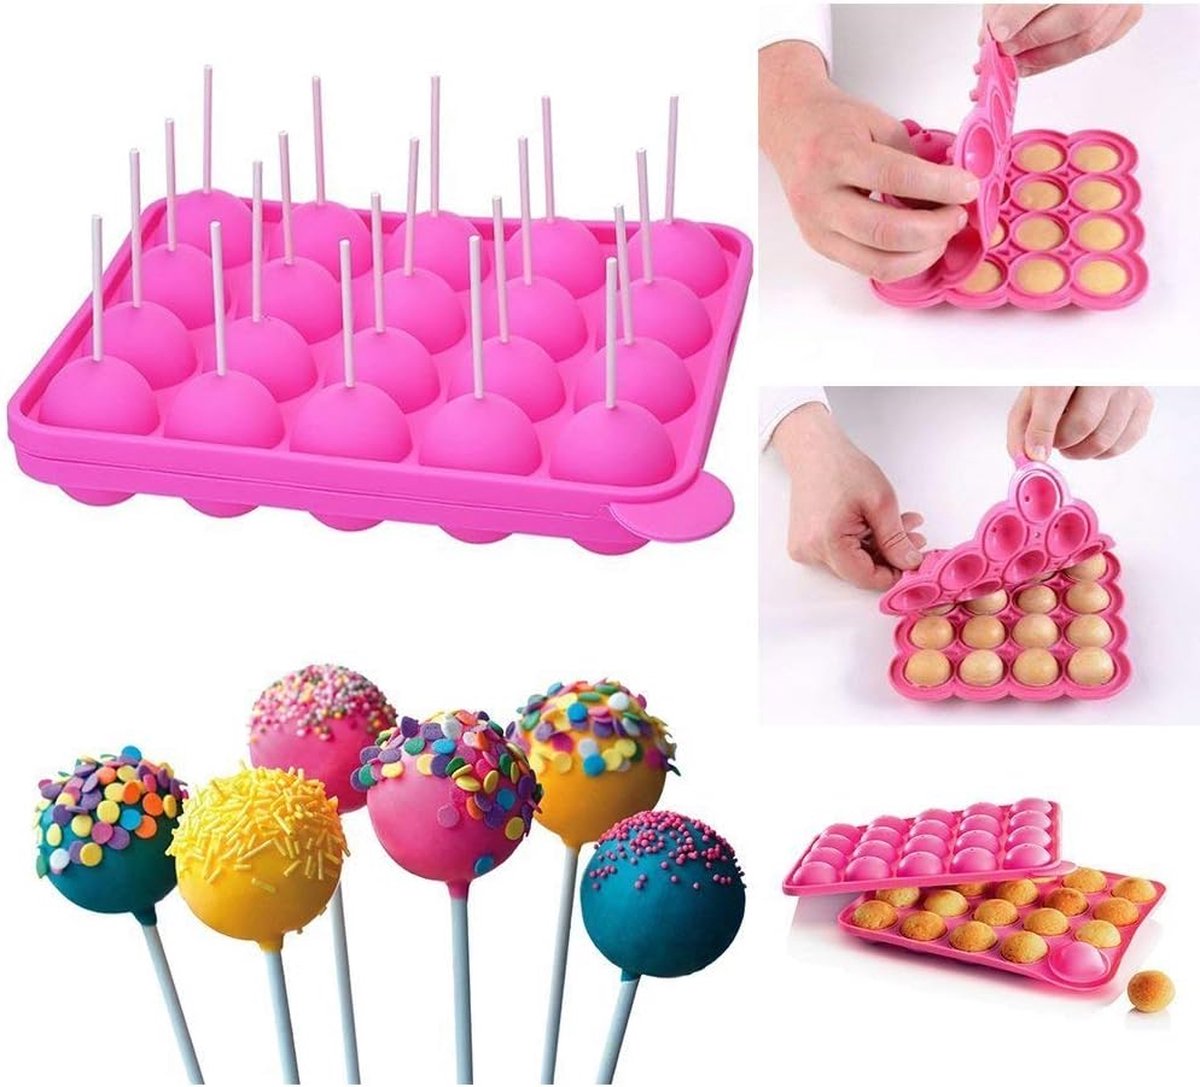 Siliconen Cake Pop Bakvormen Cake Pop mallen, 20 Ronde Mallen Siliconen Lolly schimmel dienblad Cake siliconen schimmel voor Cupcakes, snoep, gelei en chocolade, niet-stick, roze